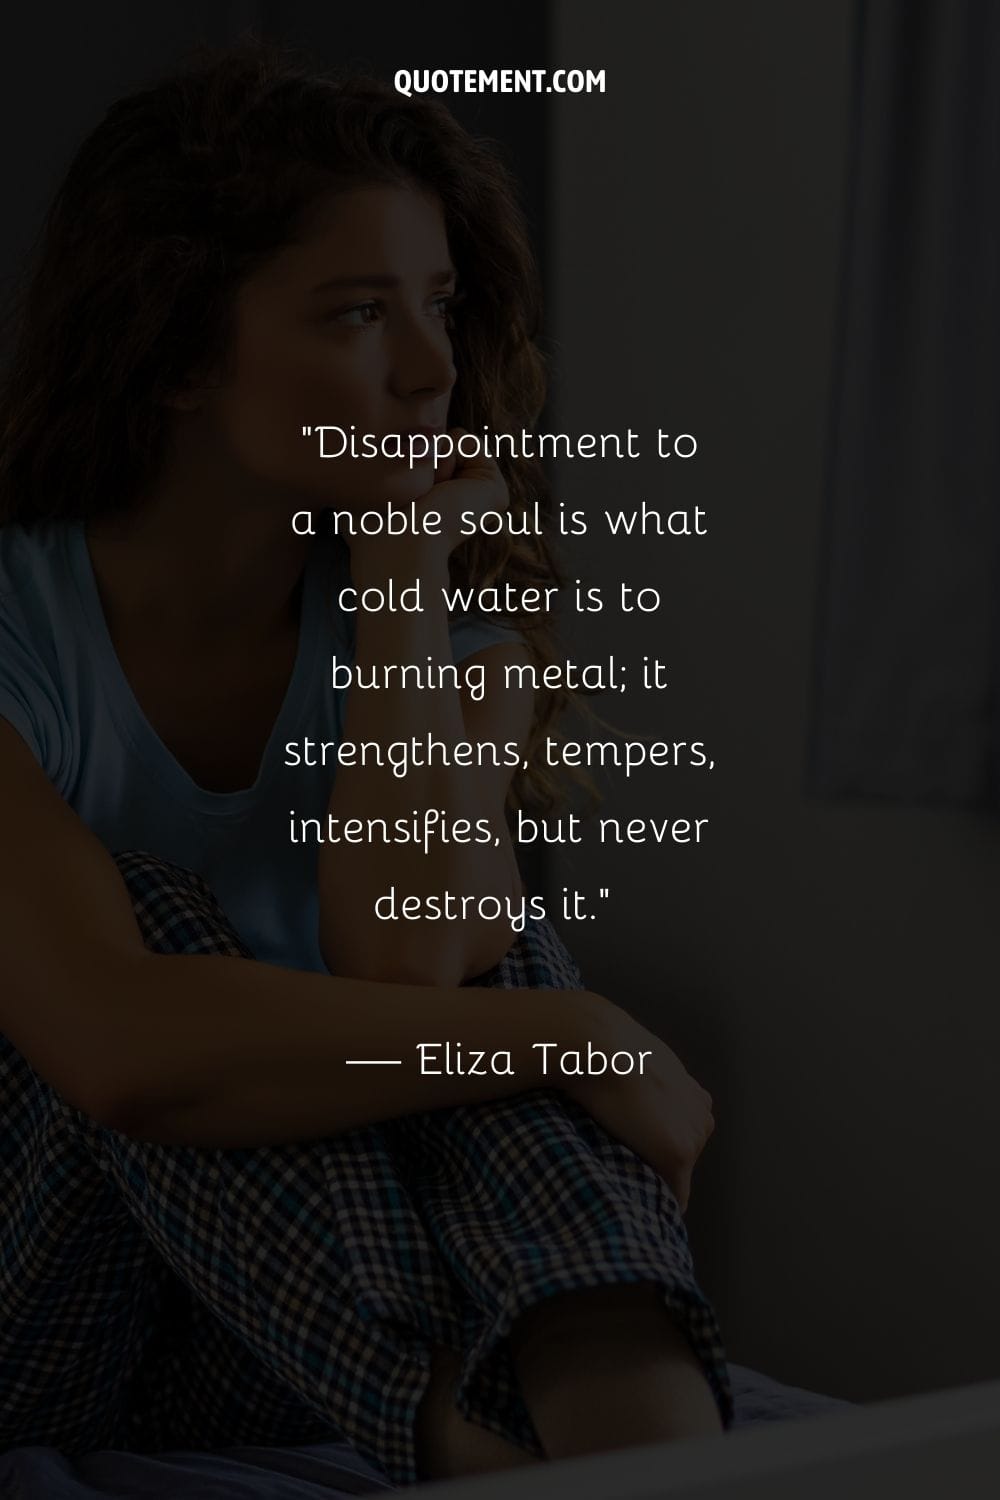 La decepción es para un alma noble lo que el agua fría es para el metal ardiente; la fortalece, la templa, la intensifica, pero nunca la destruye...